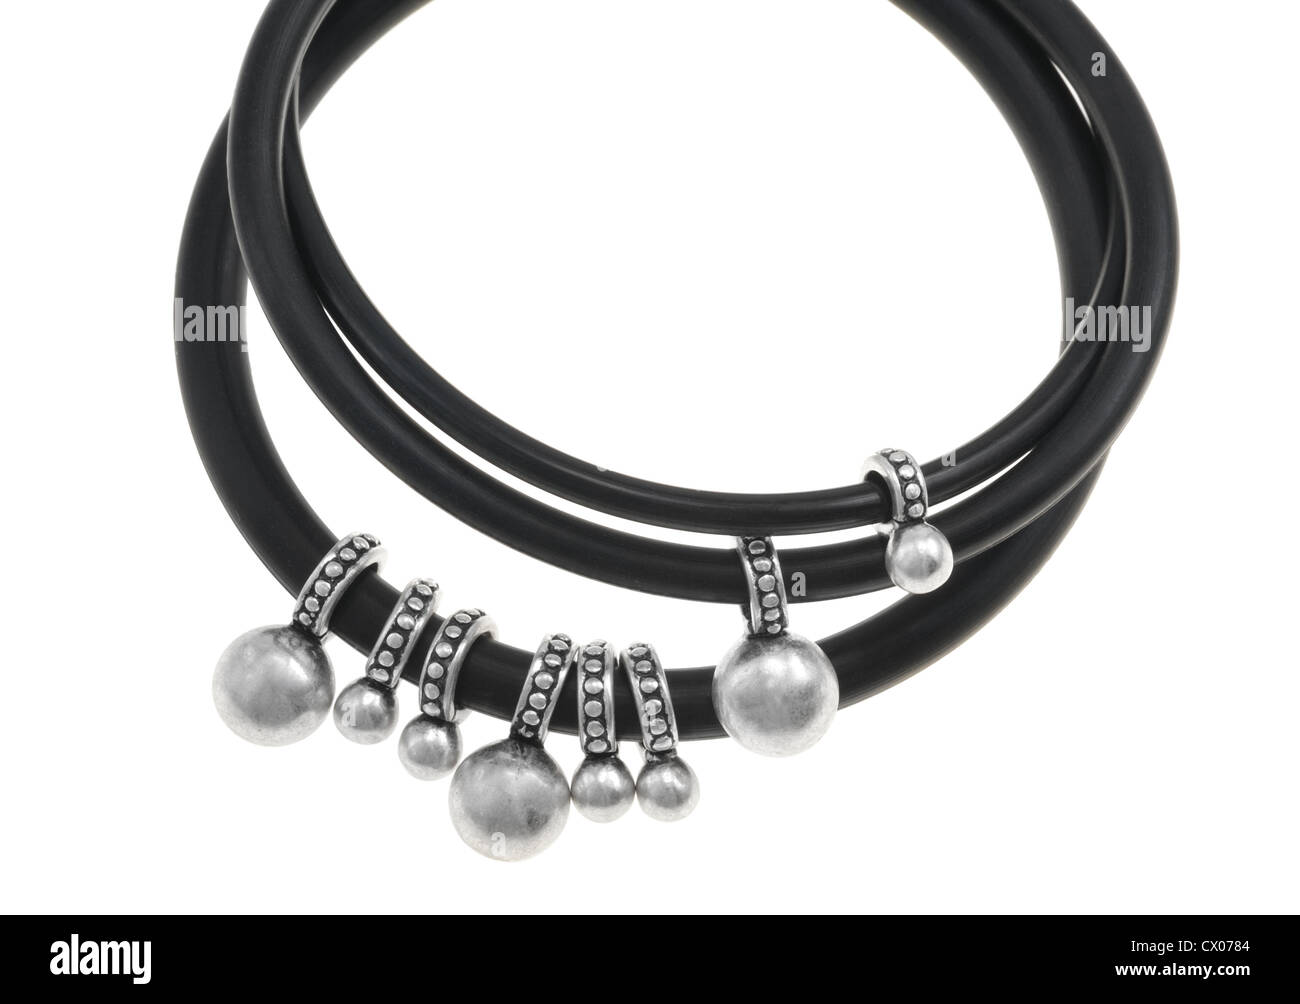 Armband aus schwarzen Kunststoff-Ringe mit Metall-Nieten, isoliert Stockfoto